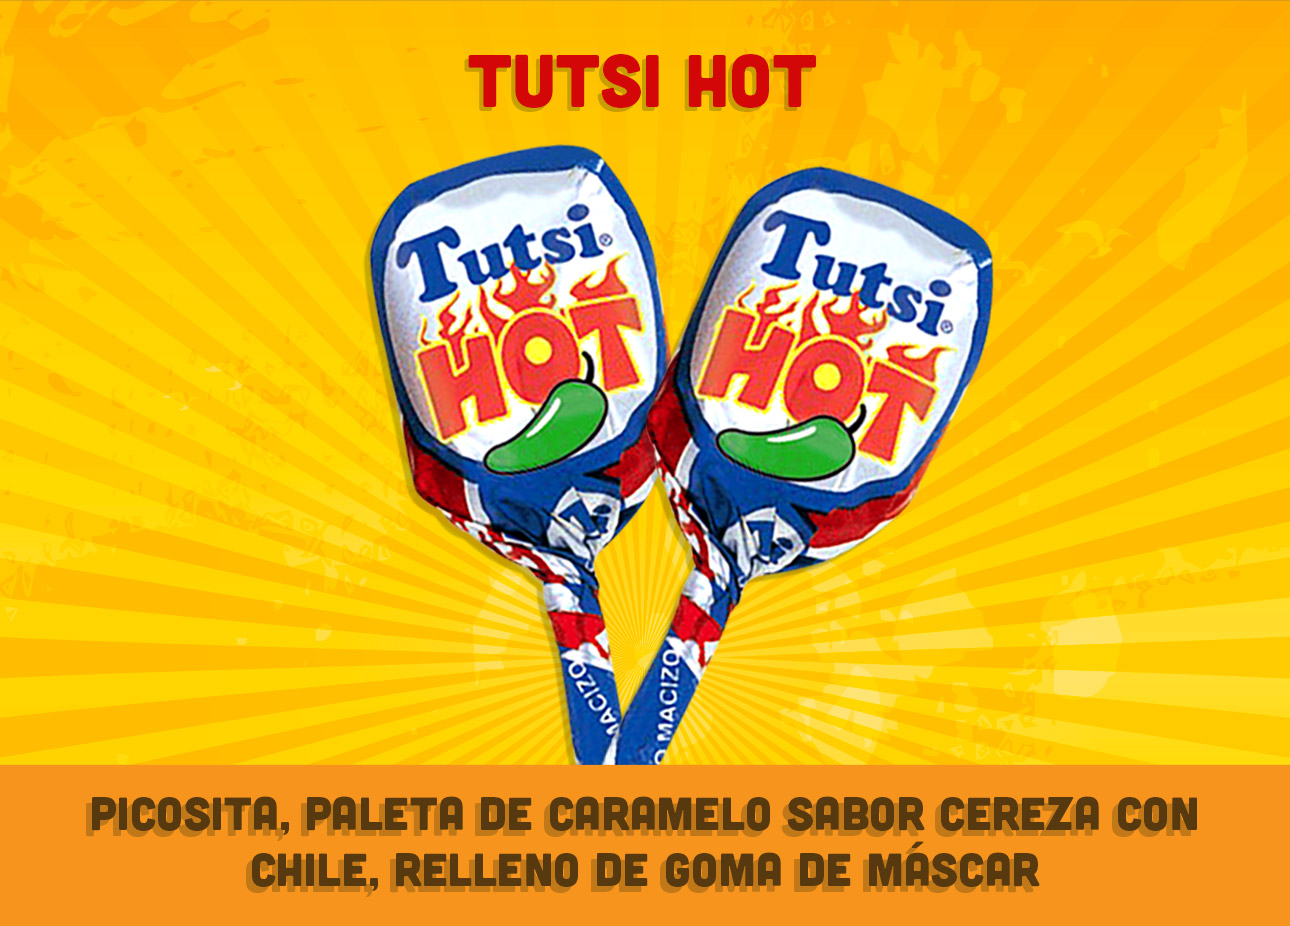 Tutsi Hot, Picosita, paleta de caramelo sabor cereza con chile, relleno de goma de máscar